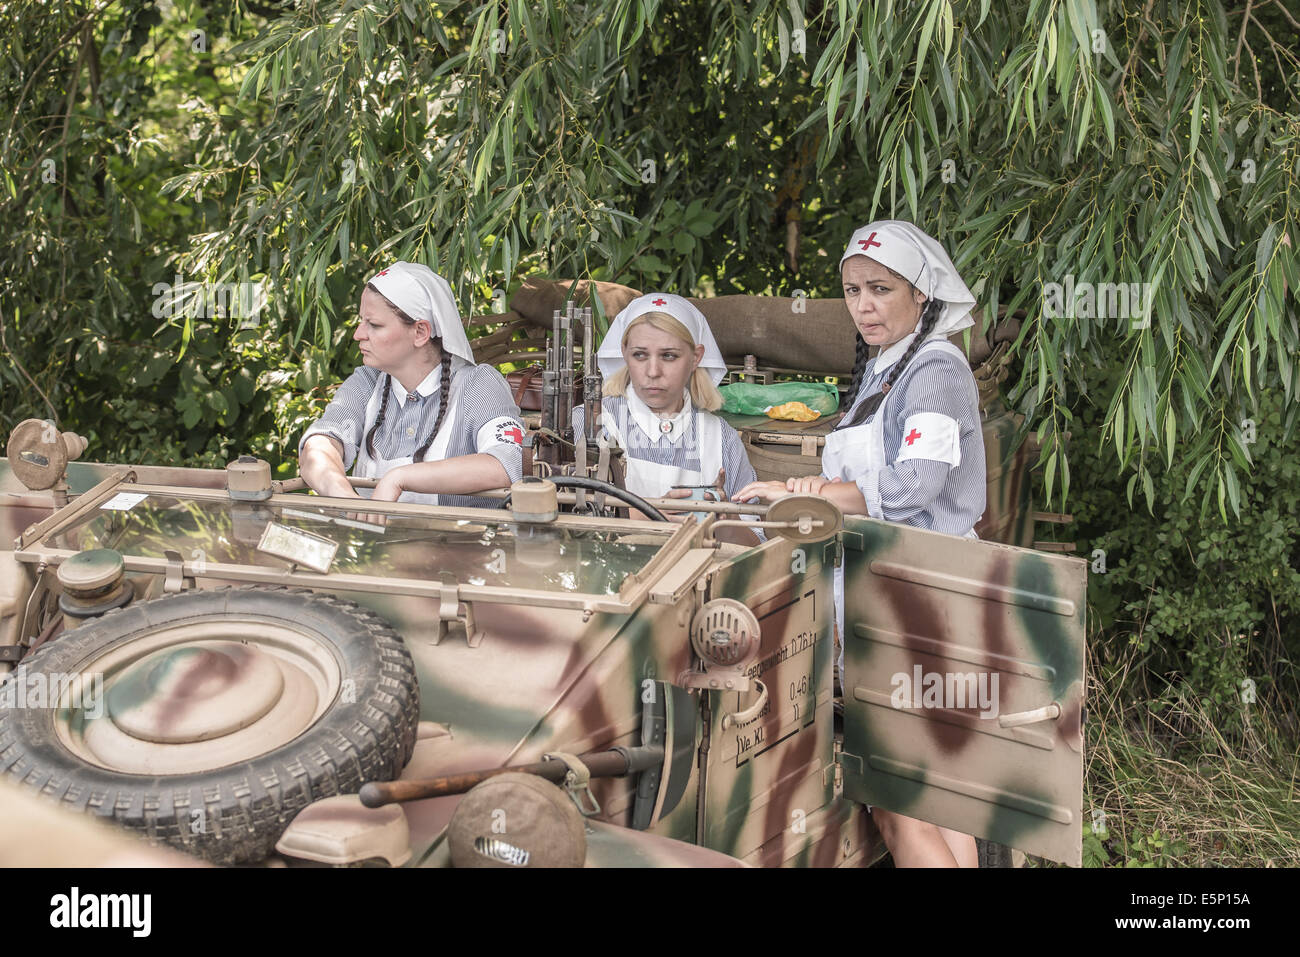 TEKOV, Slovacchia - luglio 26,2014: tre femminili stella rossa lavoratori su una pausa durante la rievocazione storica della II Guerra Mondiale combatte in Slovacchia Foto Stock